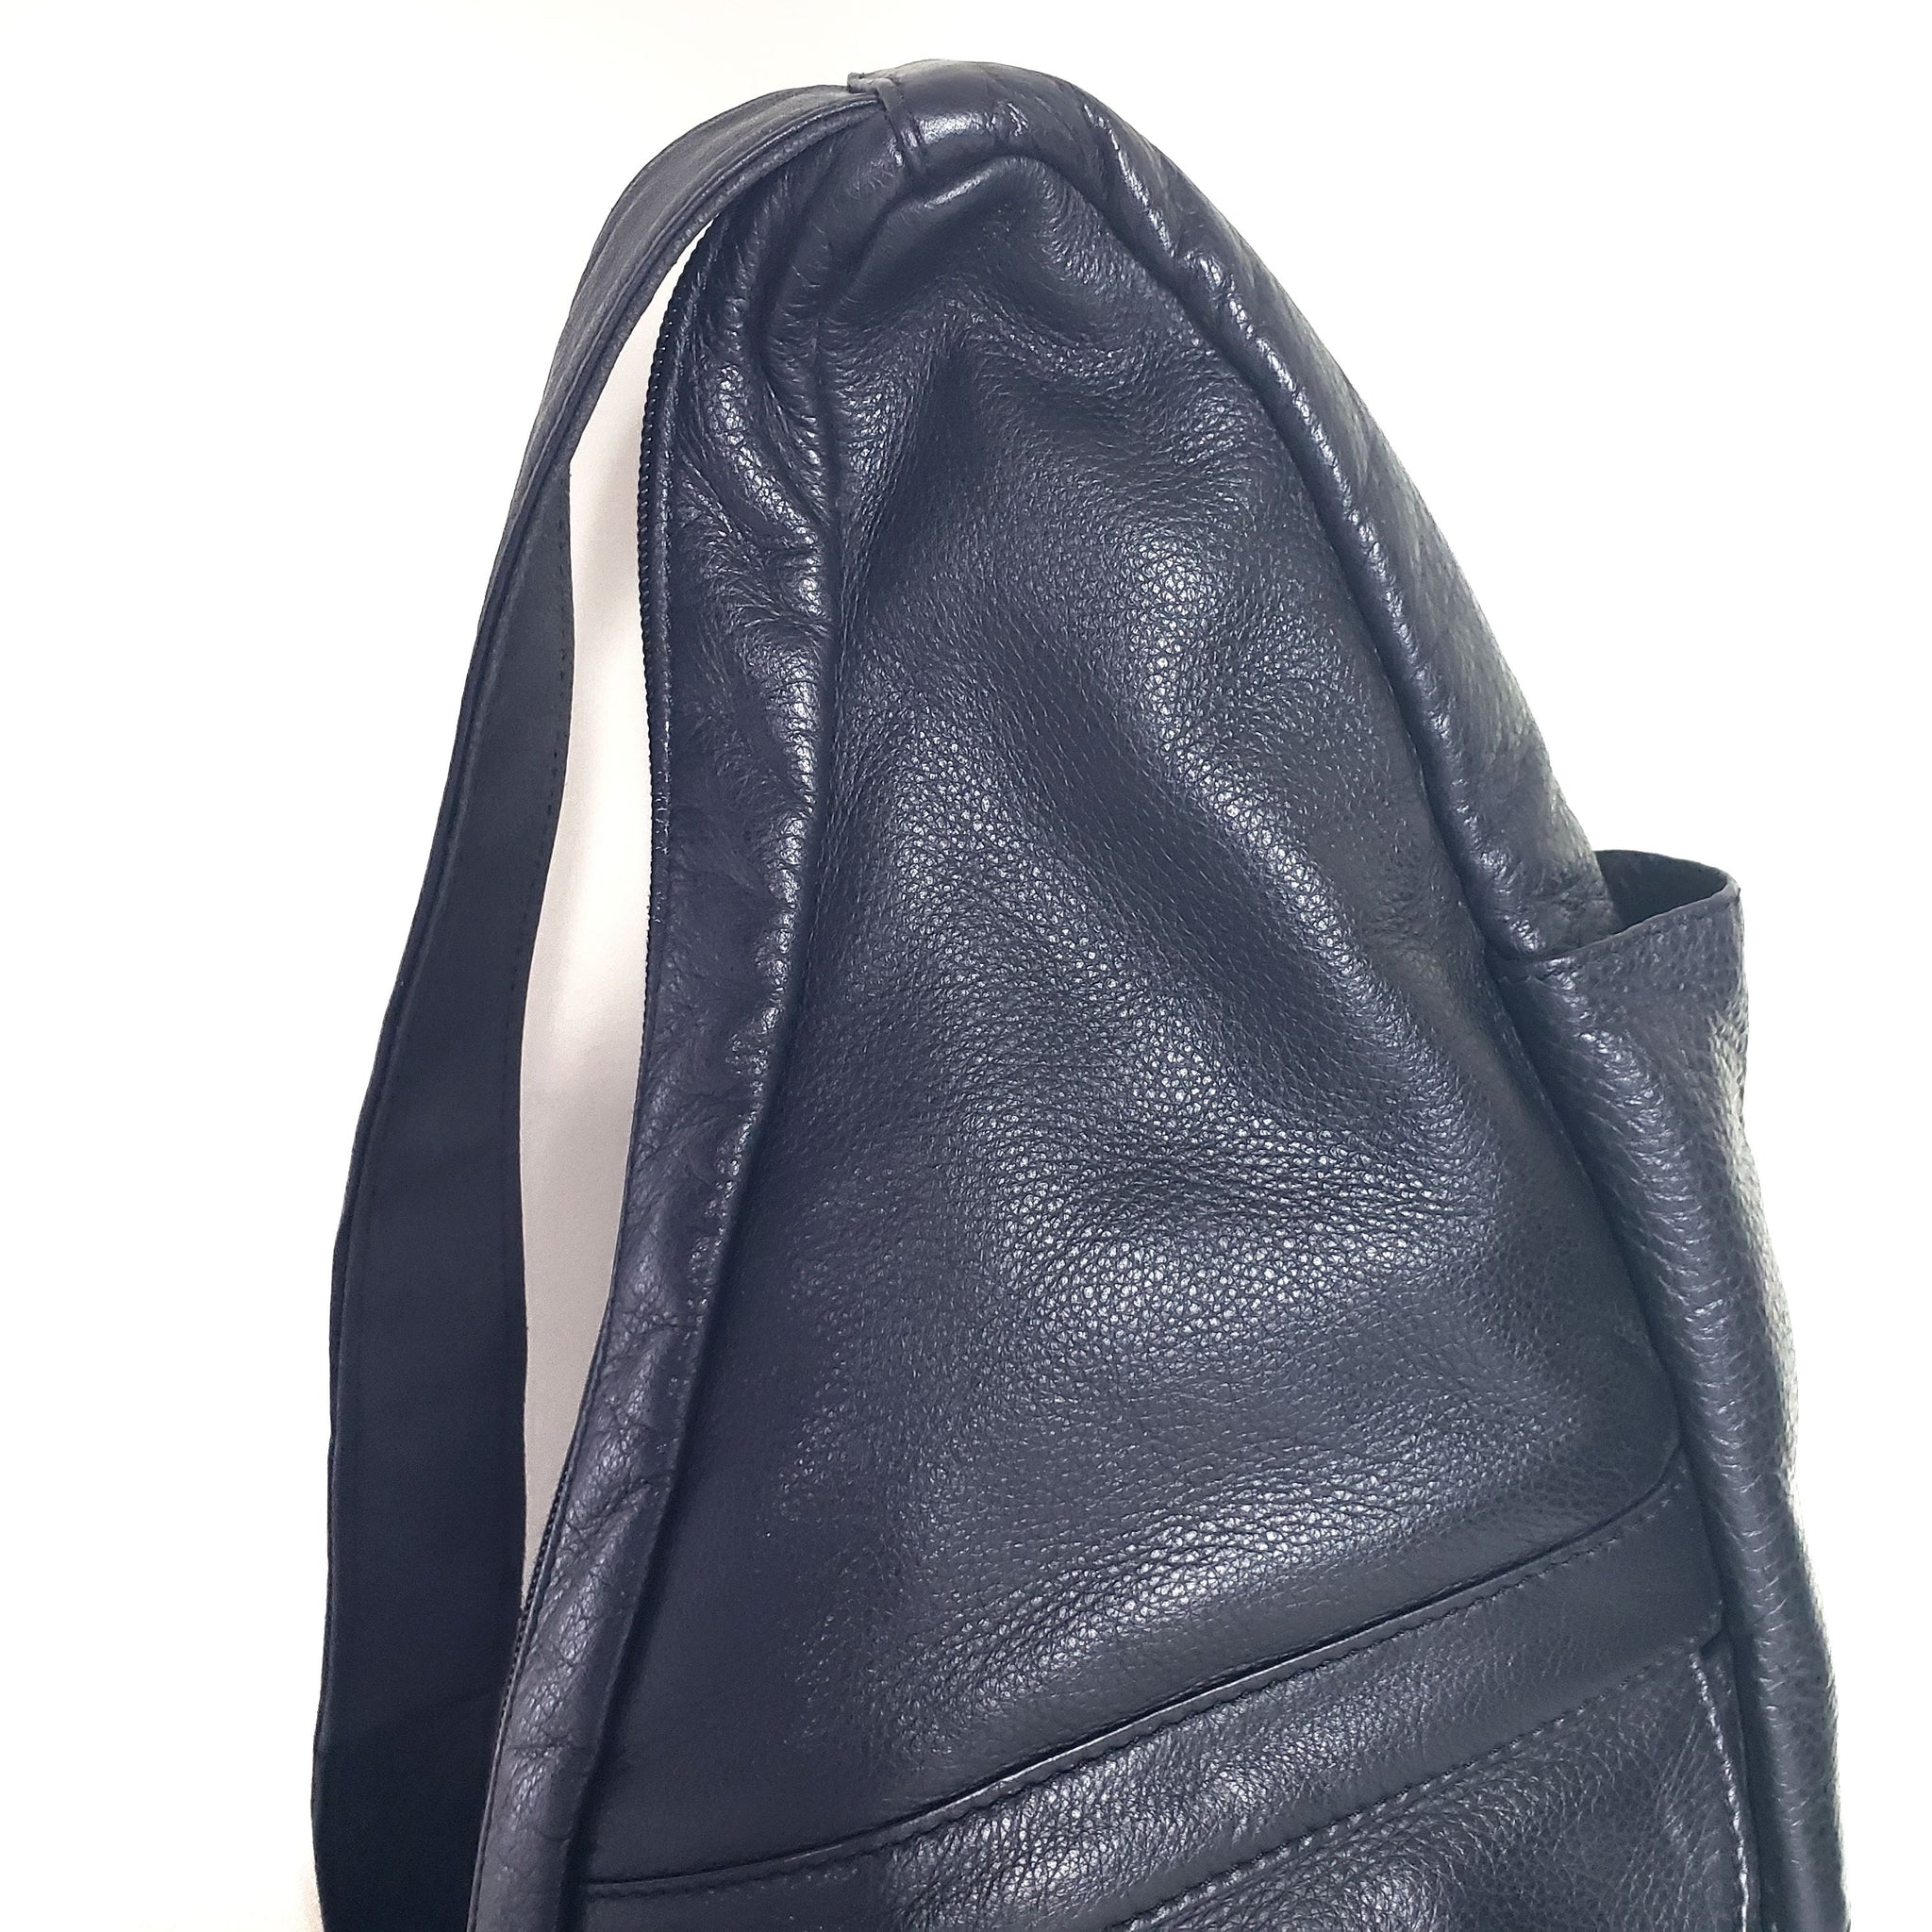 Ameribag Black Leather Backpack